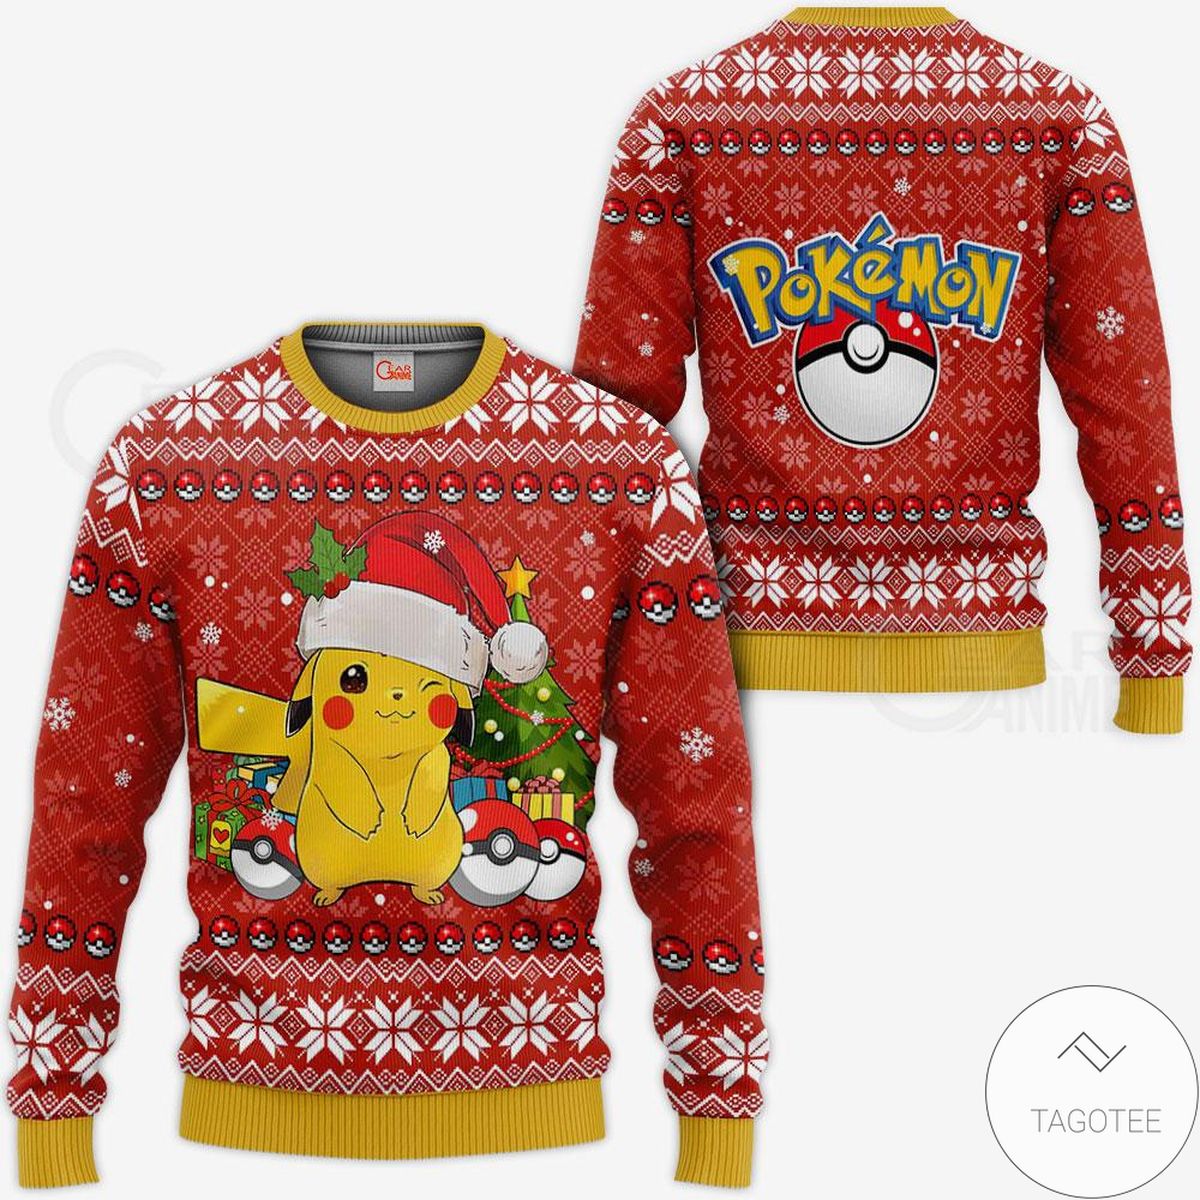 Pikachu Santa Anime Ugly Christmas Sweater